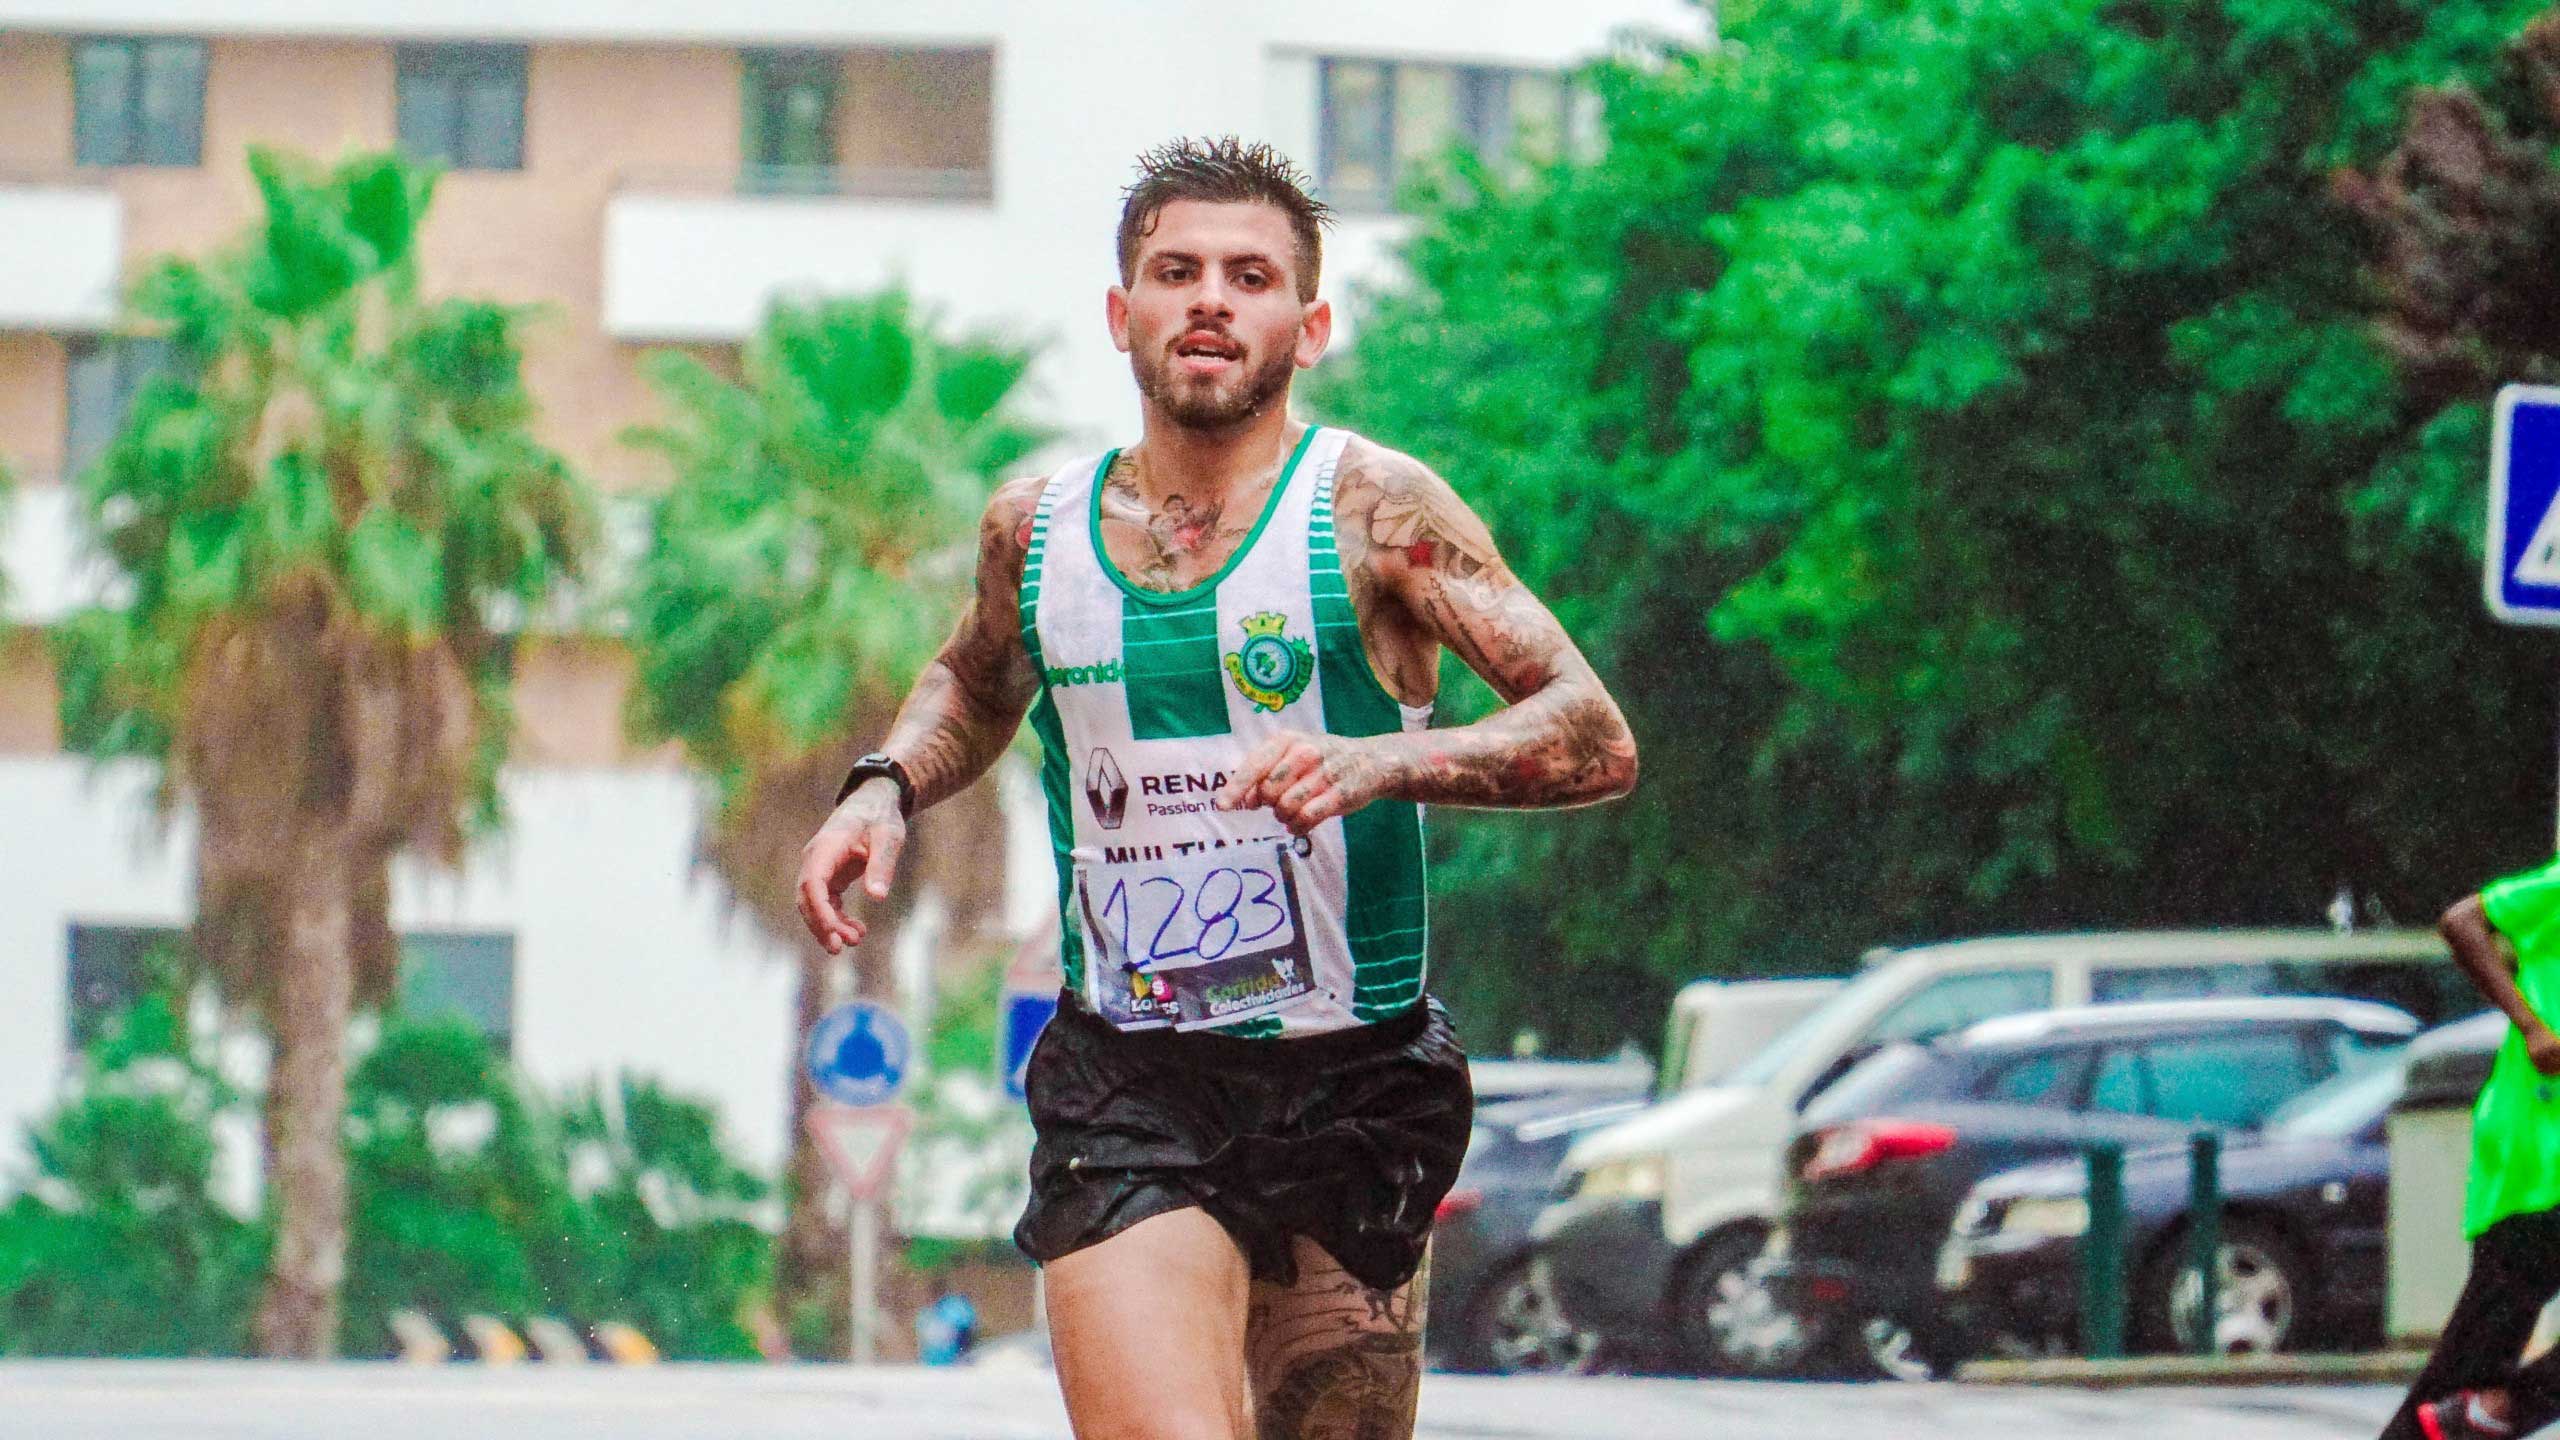 Man running a race